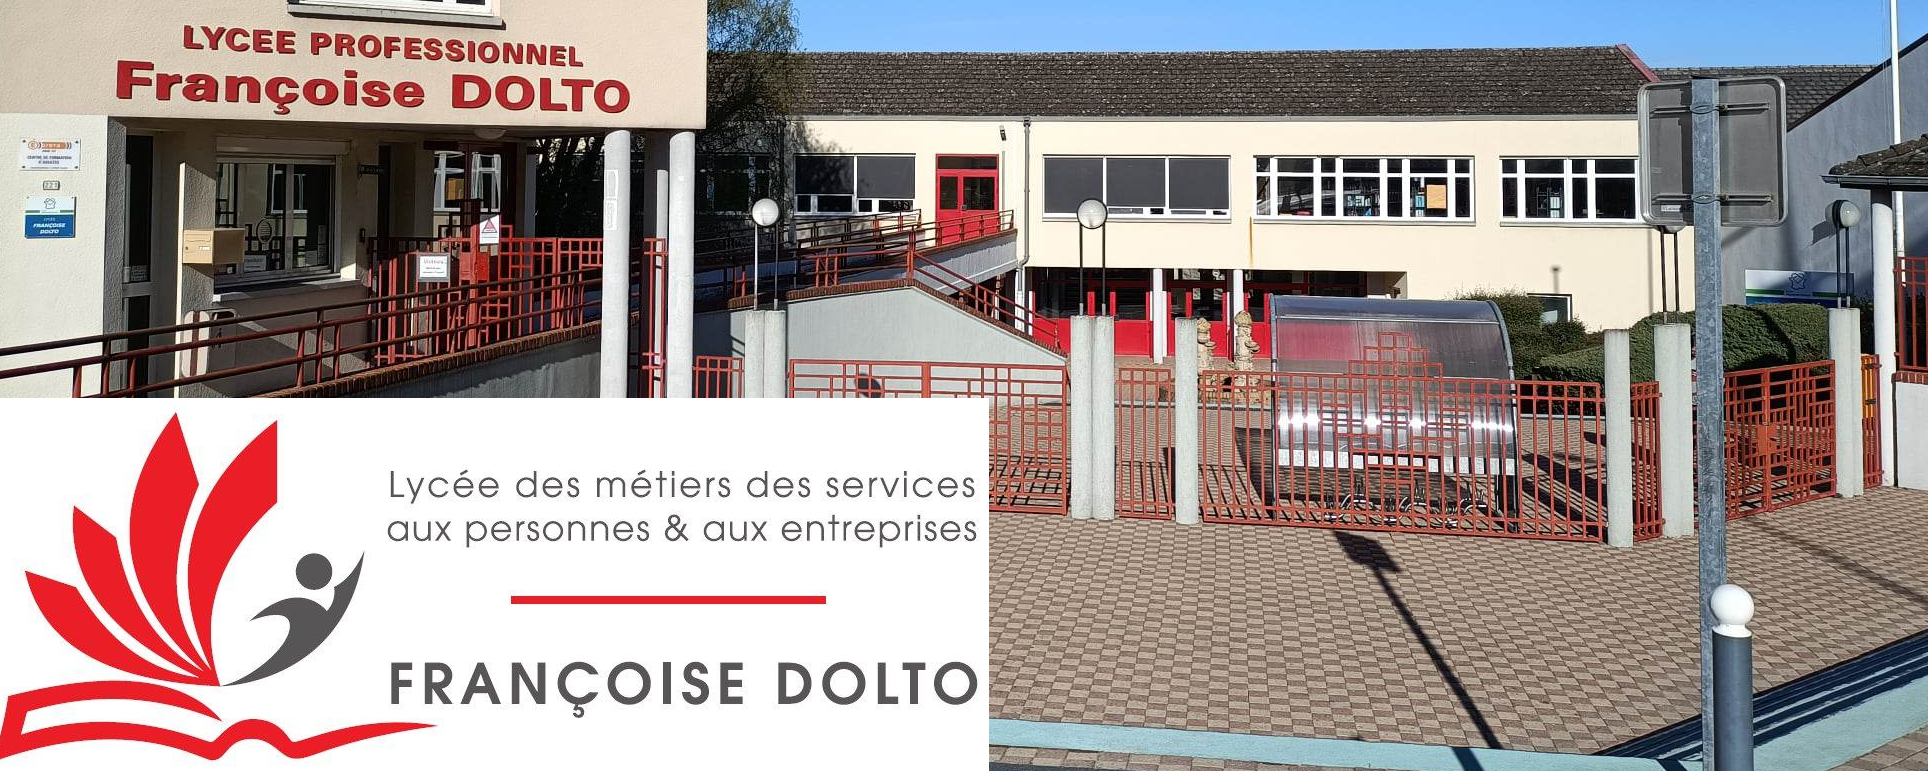 Lycée Professionnel Françoise DOLTO - GUISE 02120 -